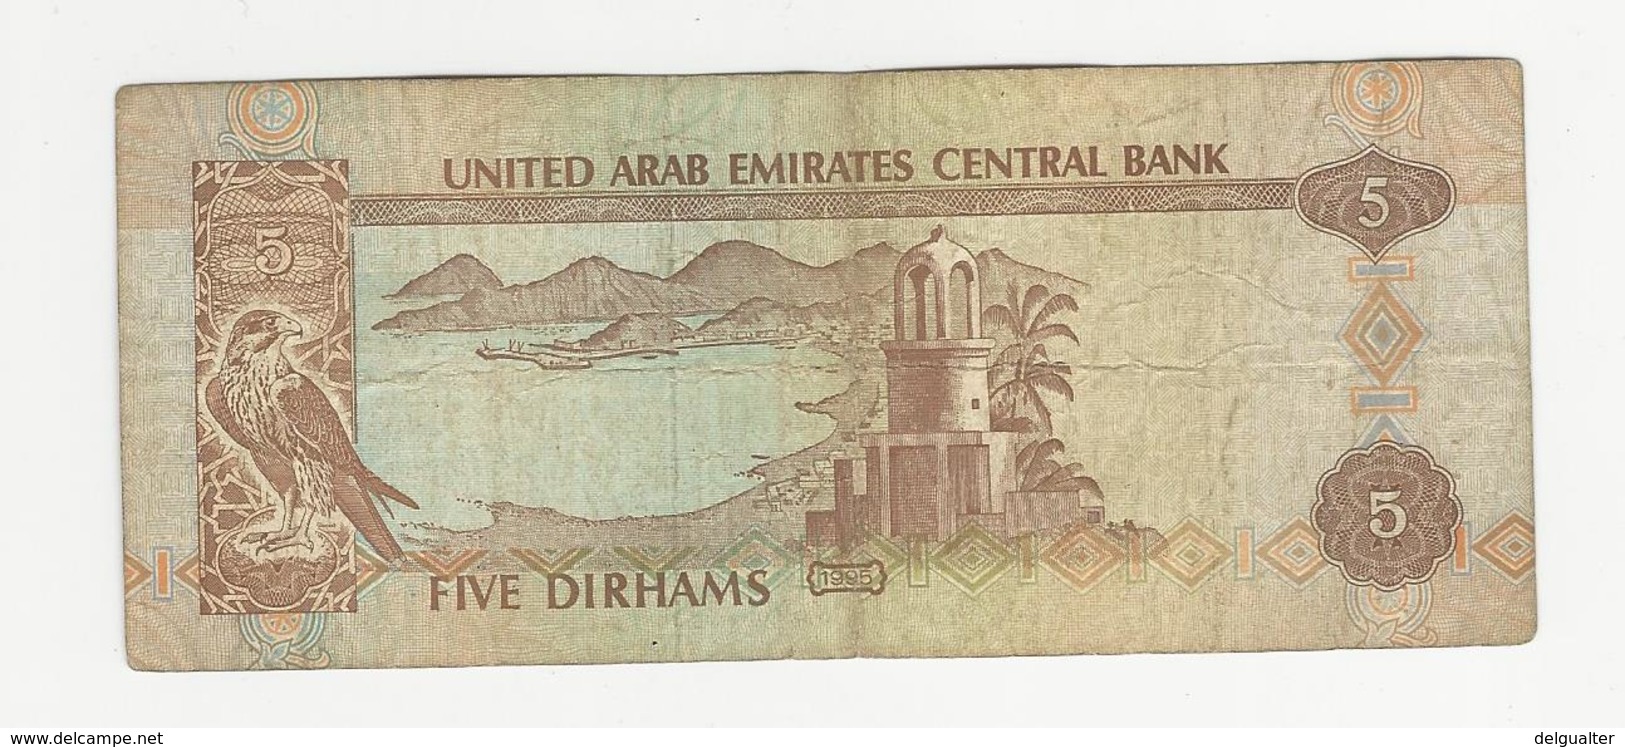 United Arab Emirates 5 Dirhams 1995 - Ver. Arab. Emirate